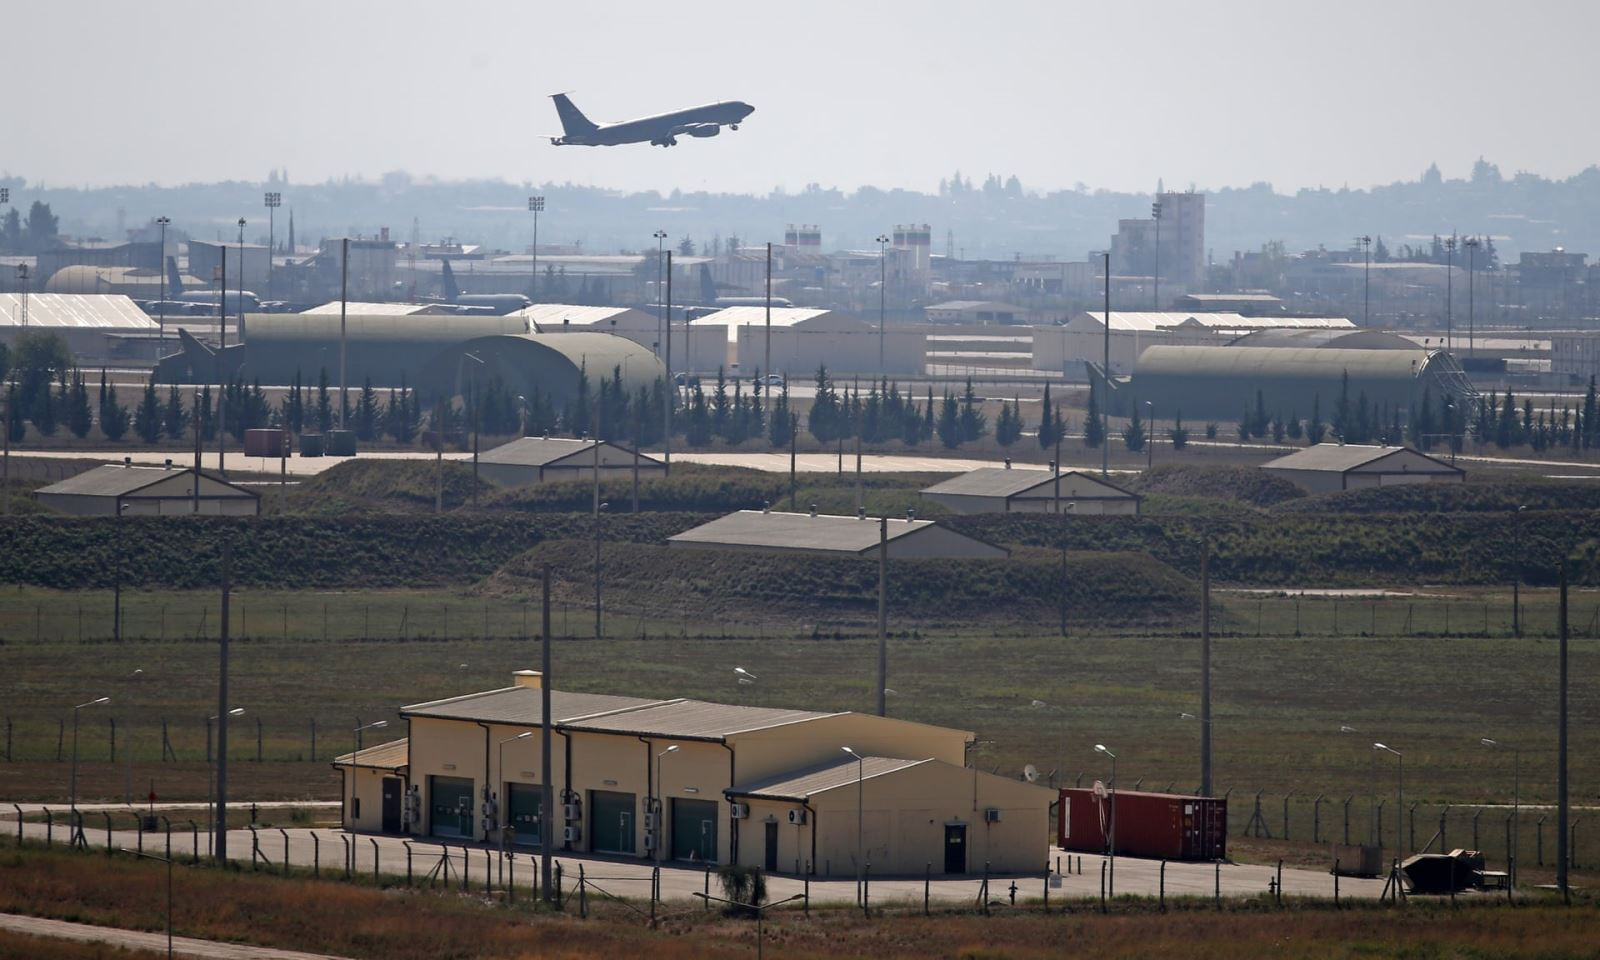 Một máy bay quân sự Thổ Nhĩ Kỳ cất cánh từ căn cứ không quân İncirlik - nơi đang dự trữ 50 quả bom hạt nhân của Mỹ. Ảnh: Anadolu Agency